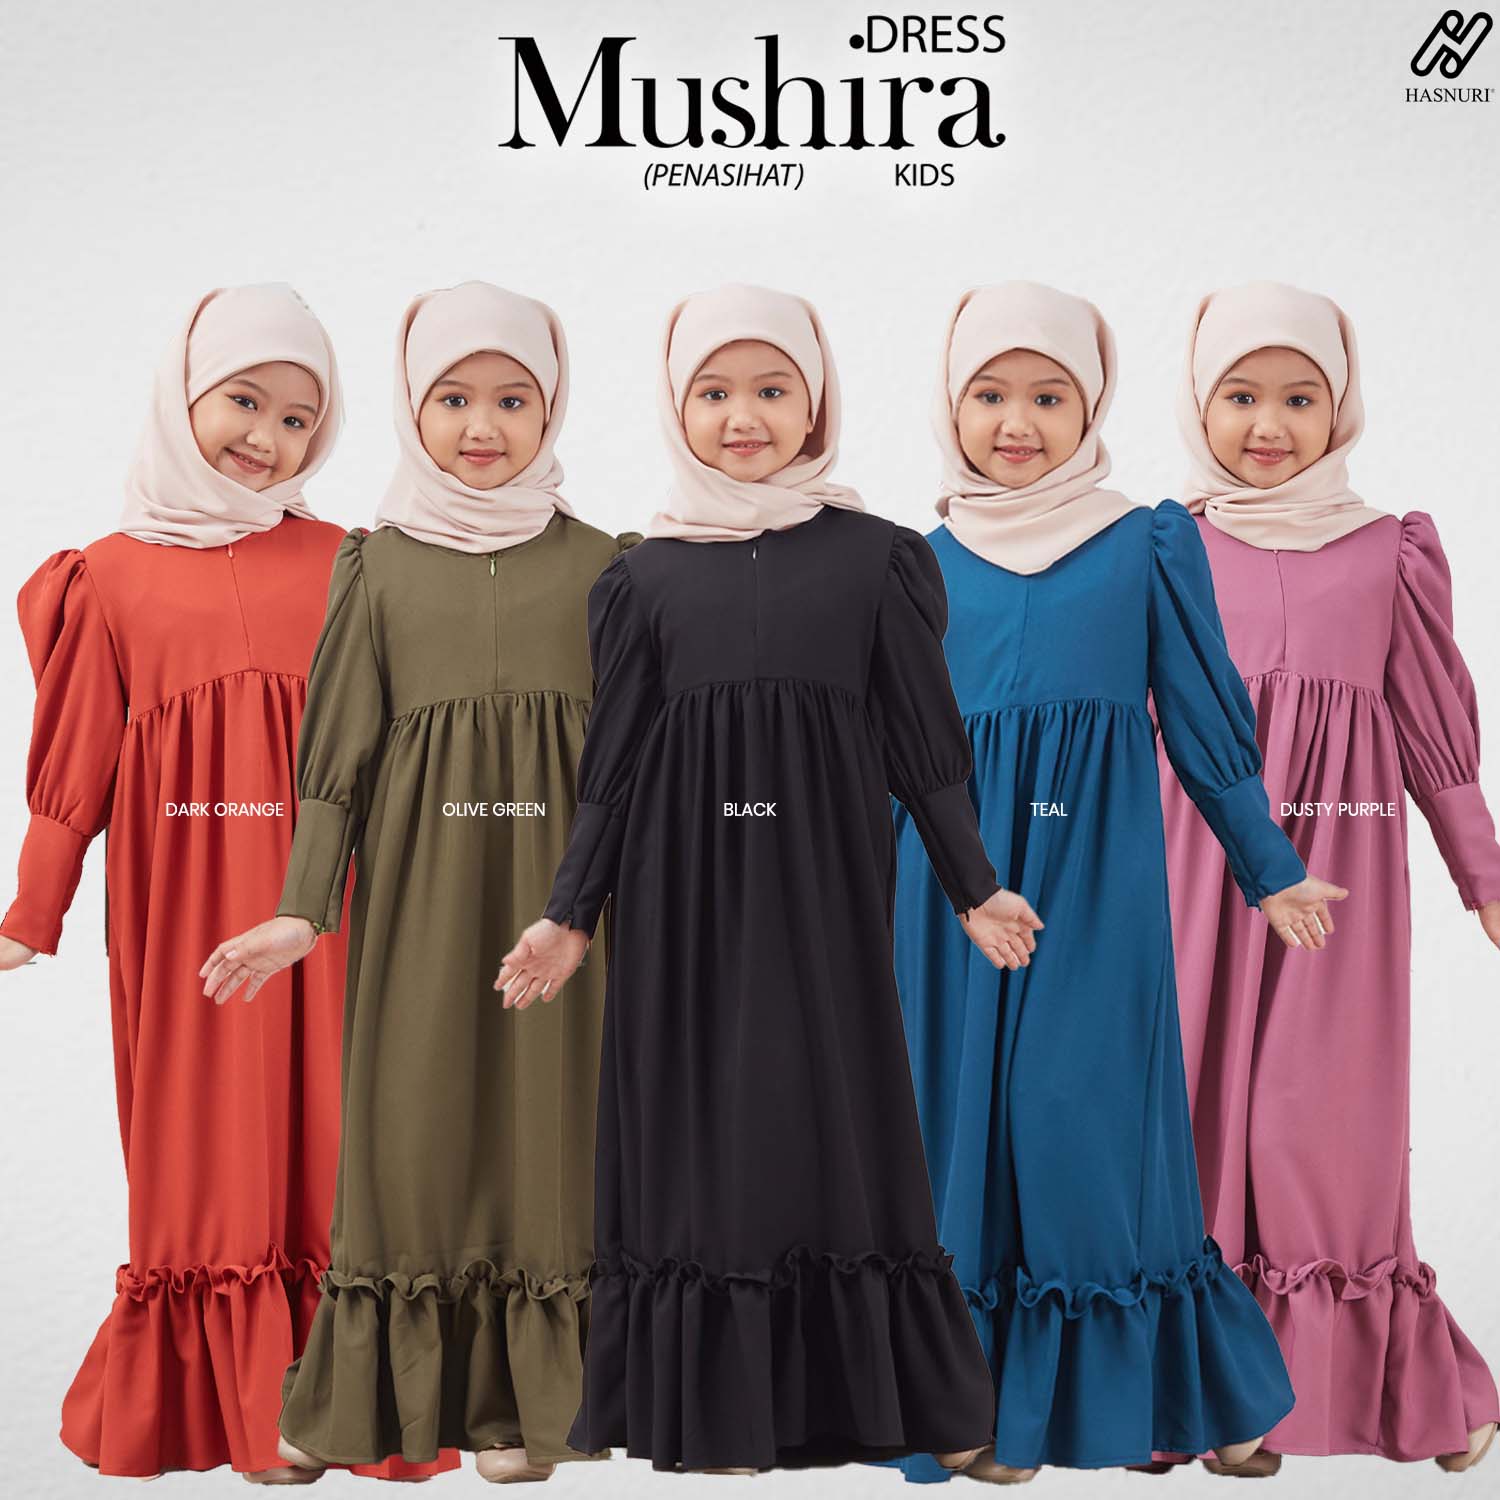 Dress Mushira Kids - Dusty Purple